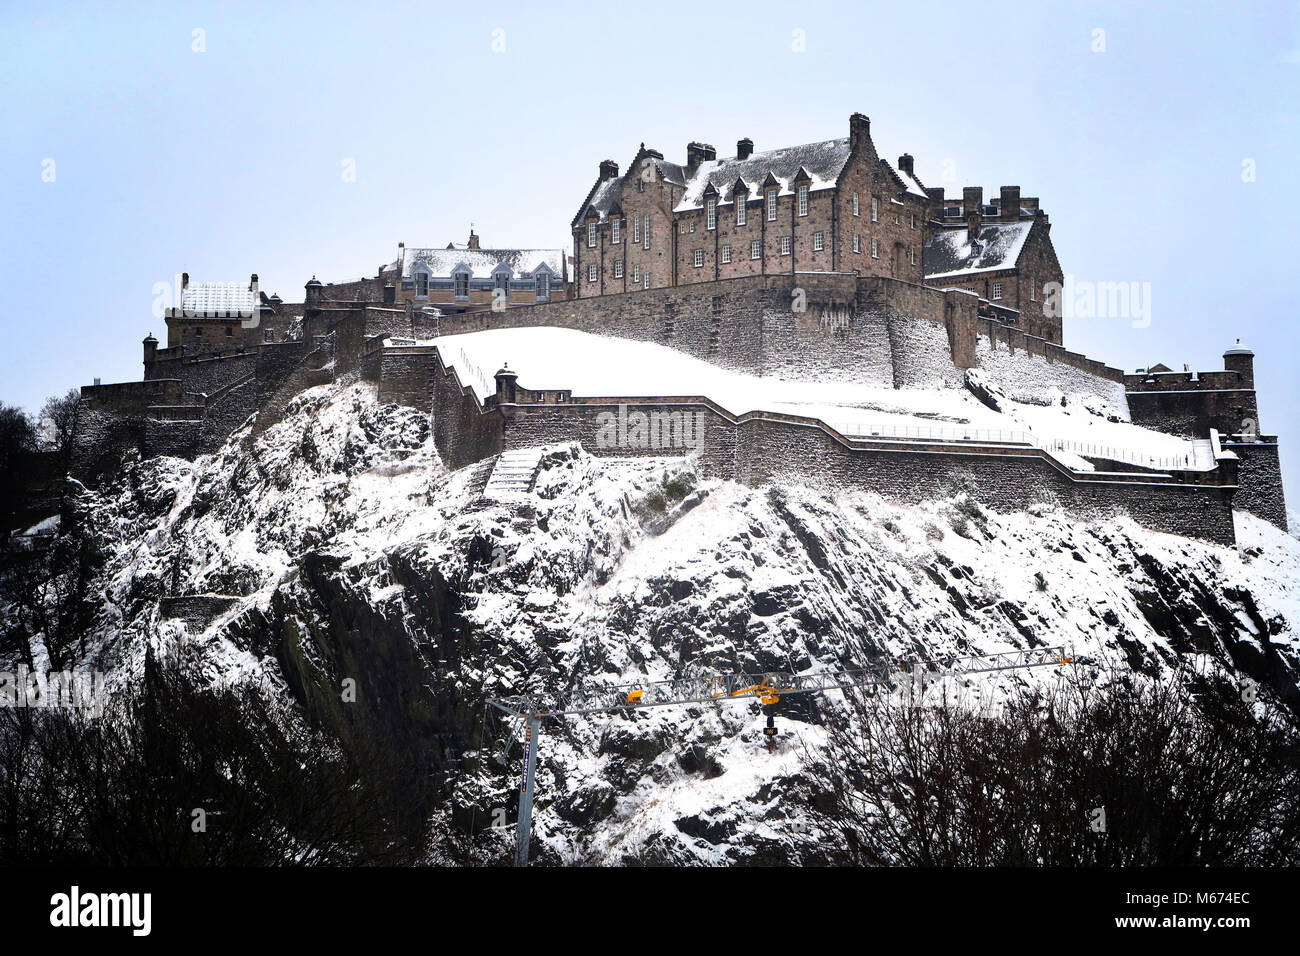 Il Castello di Edimburgo nella neve, come tempesta Emma, laminazione in dall'Atlantico, sembra pronta a soddisfare la Bestia da parte dell'est Russia gelida aria - causando ulteriori nevicate diffuse e temperature di amaro. Foto Stock